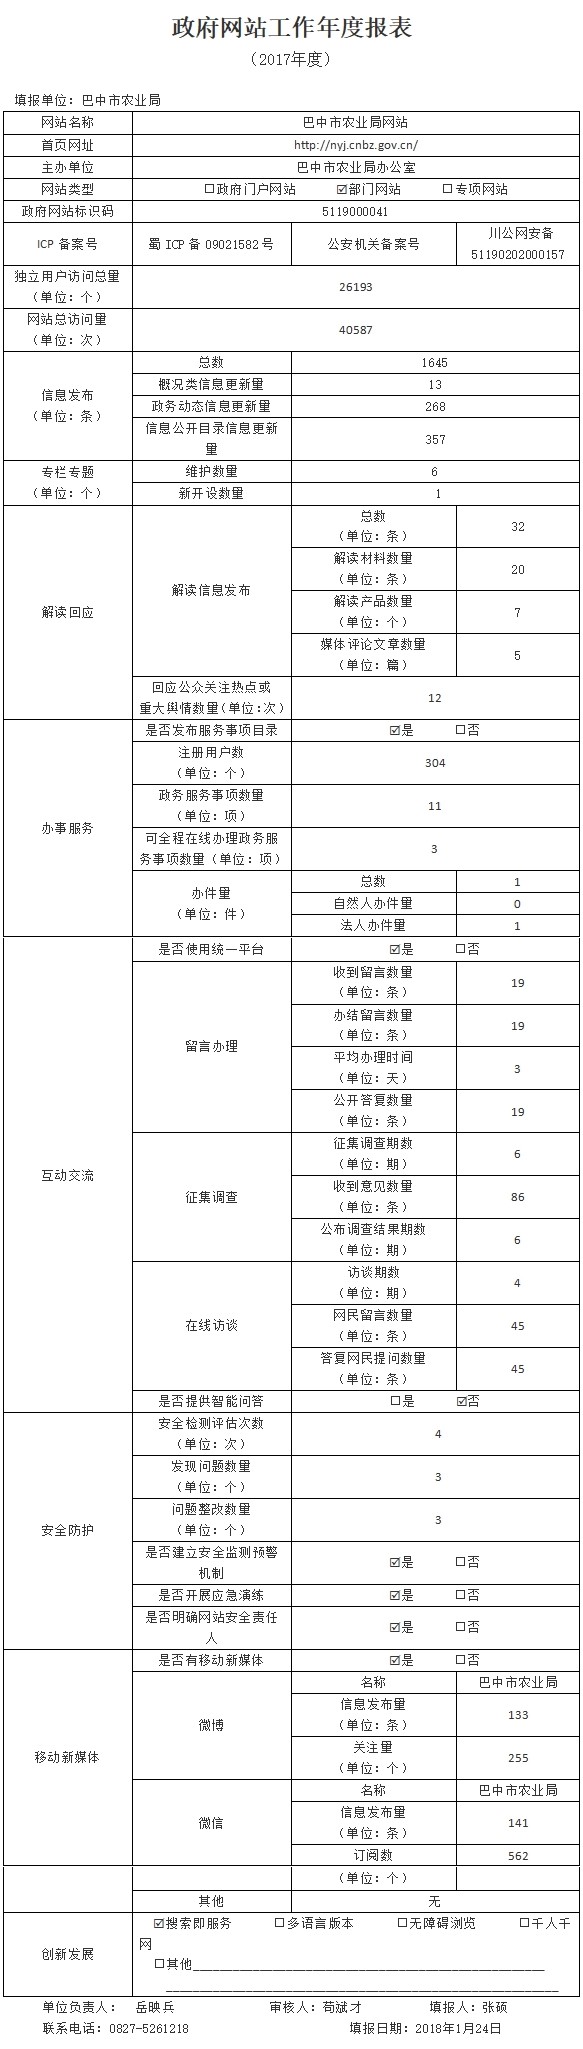 政府网站工作年度报表-巴中市农业局.jpg